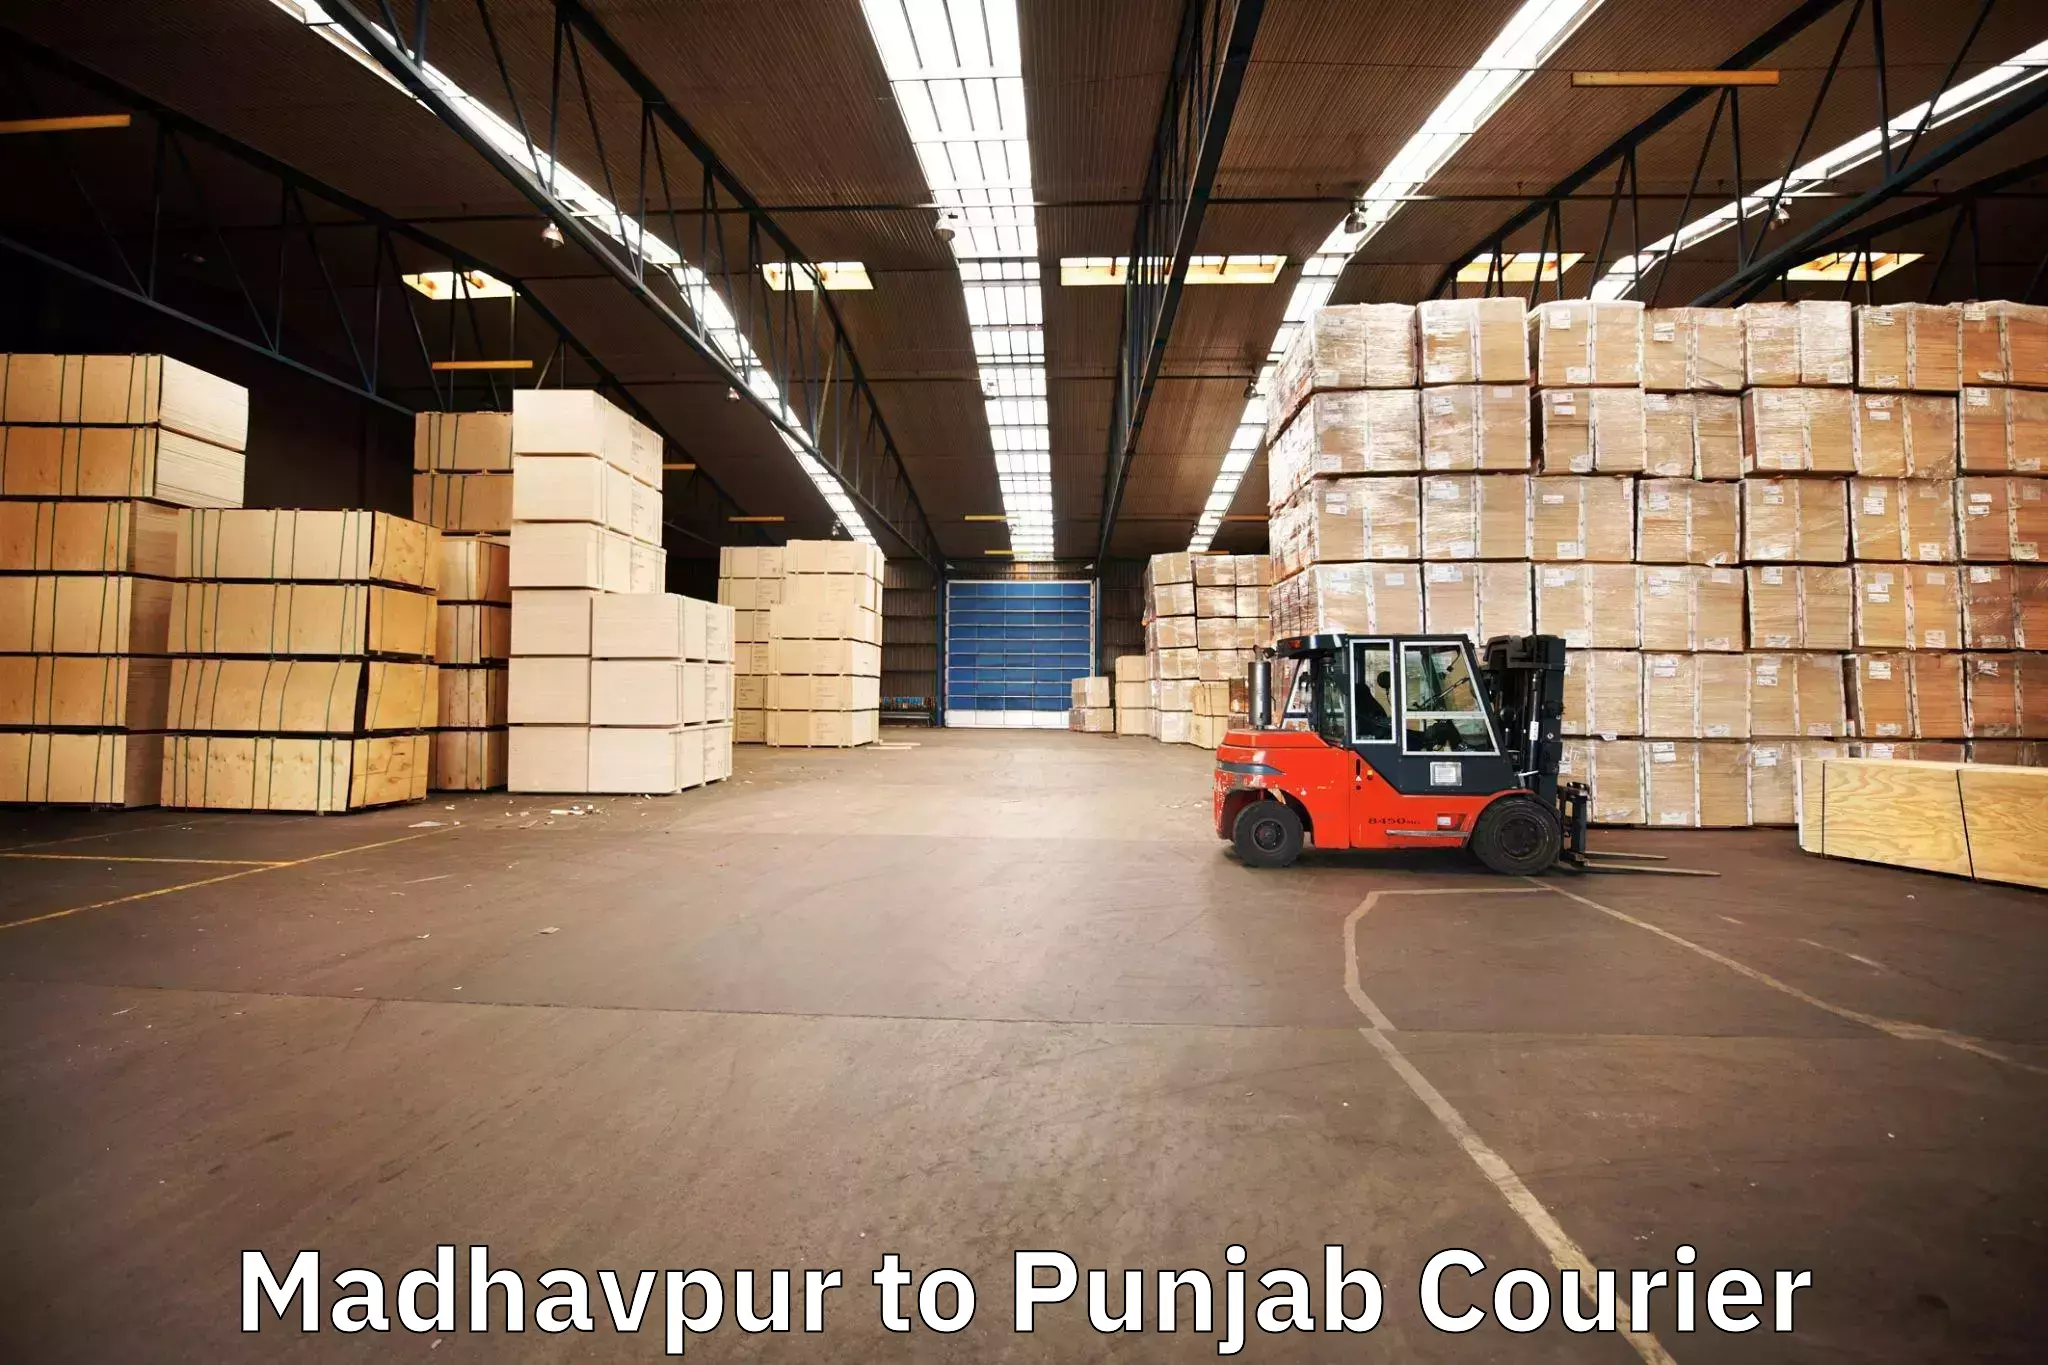 Furniture transport professionals Madhavpur to Abohar